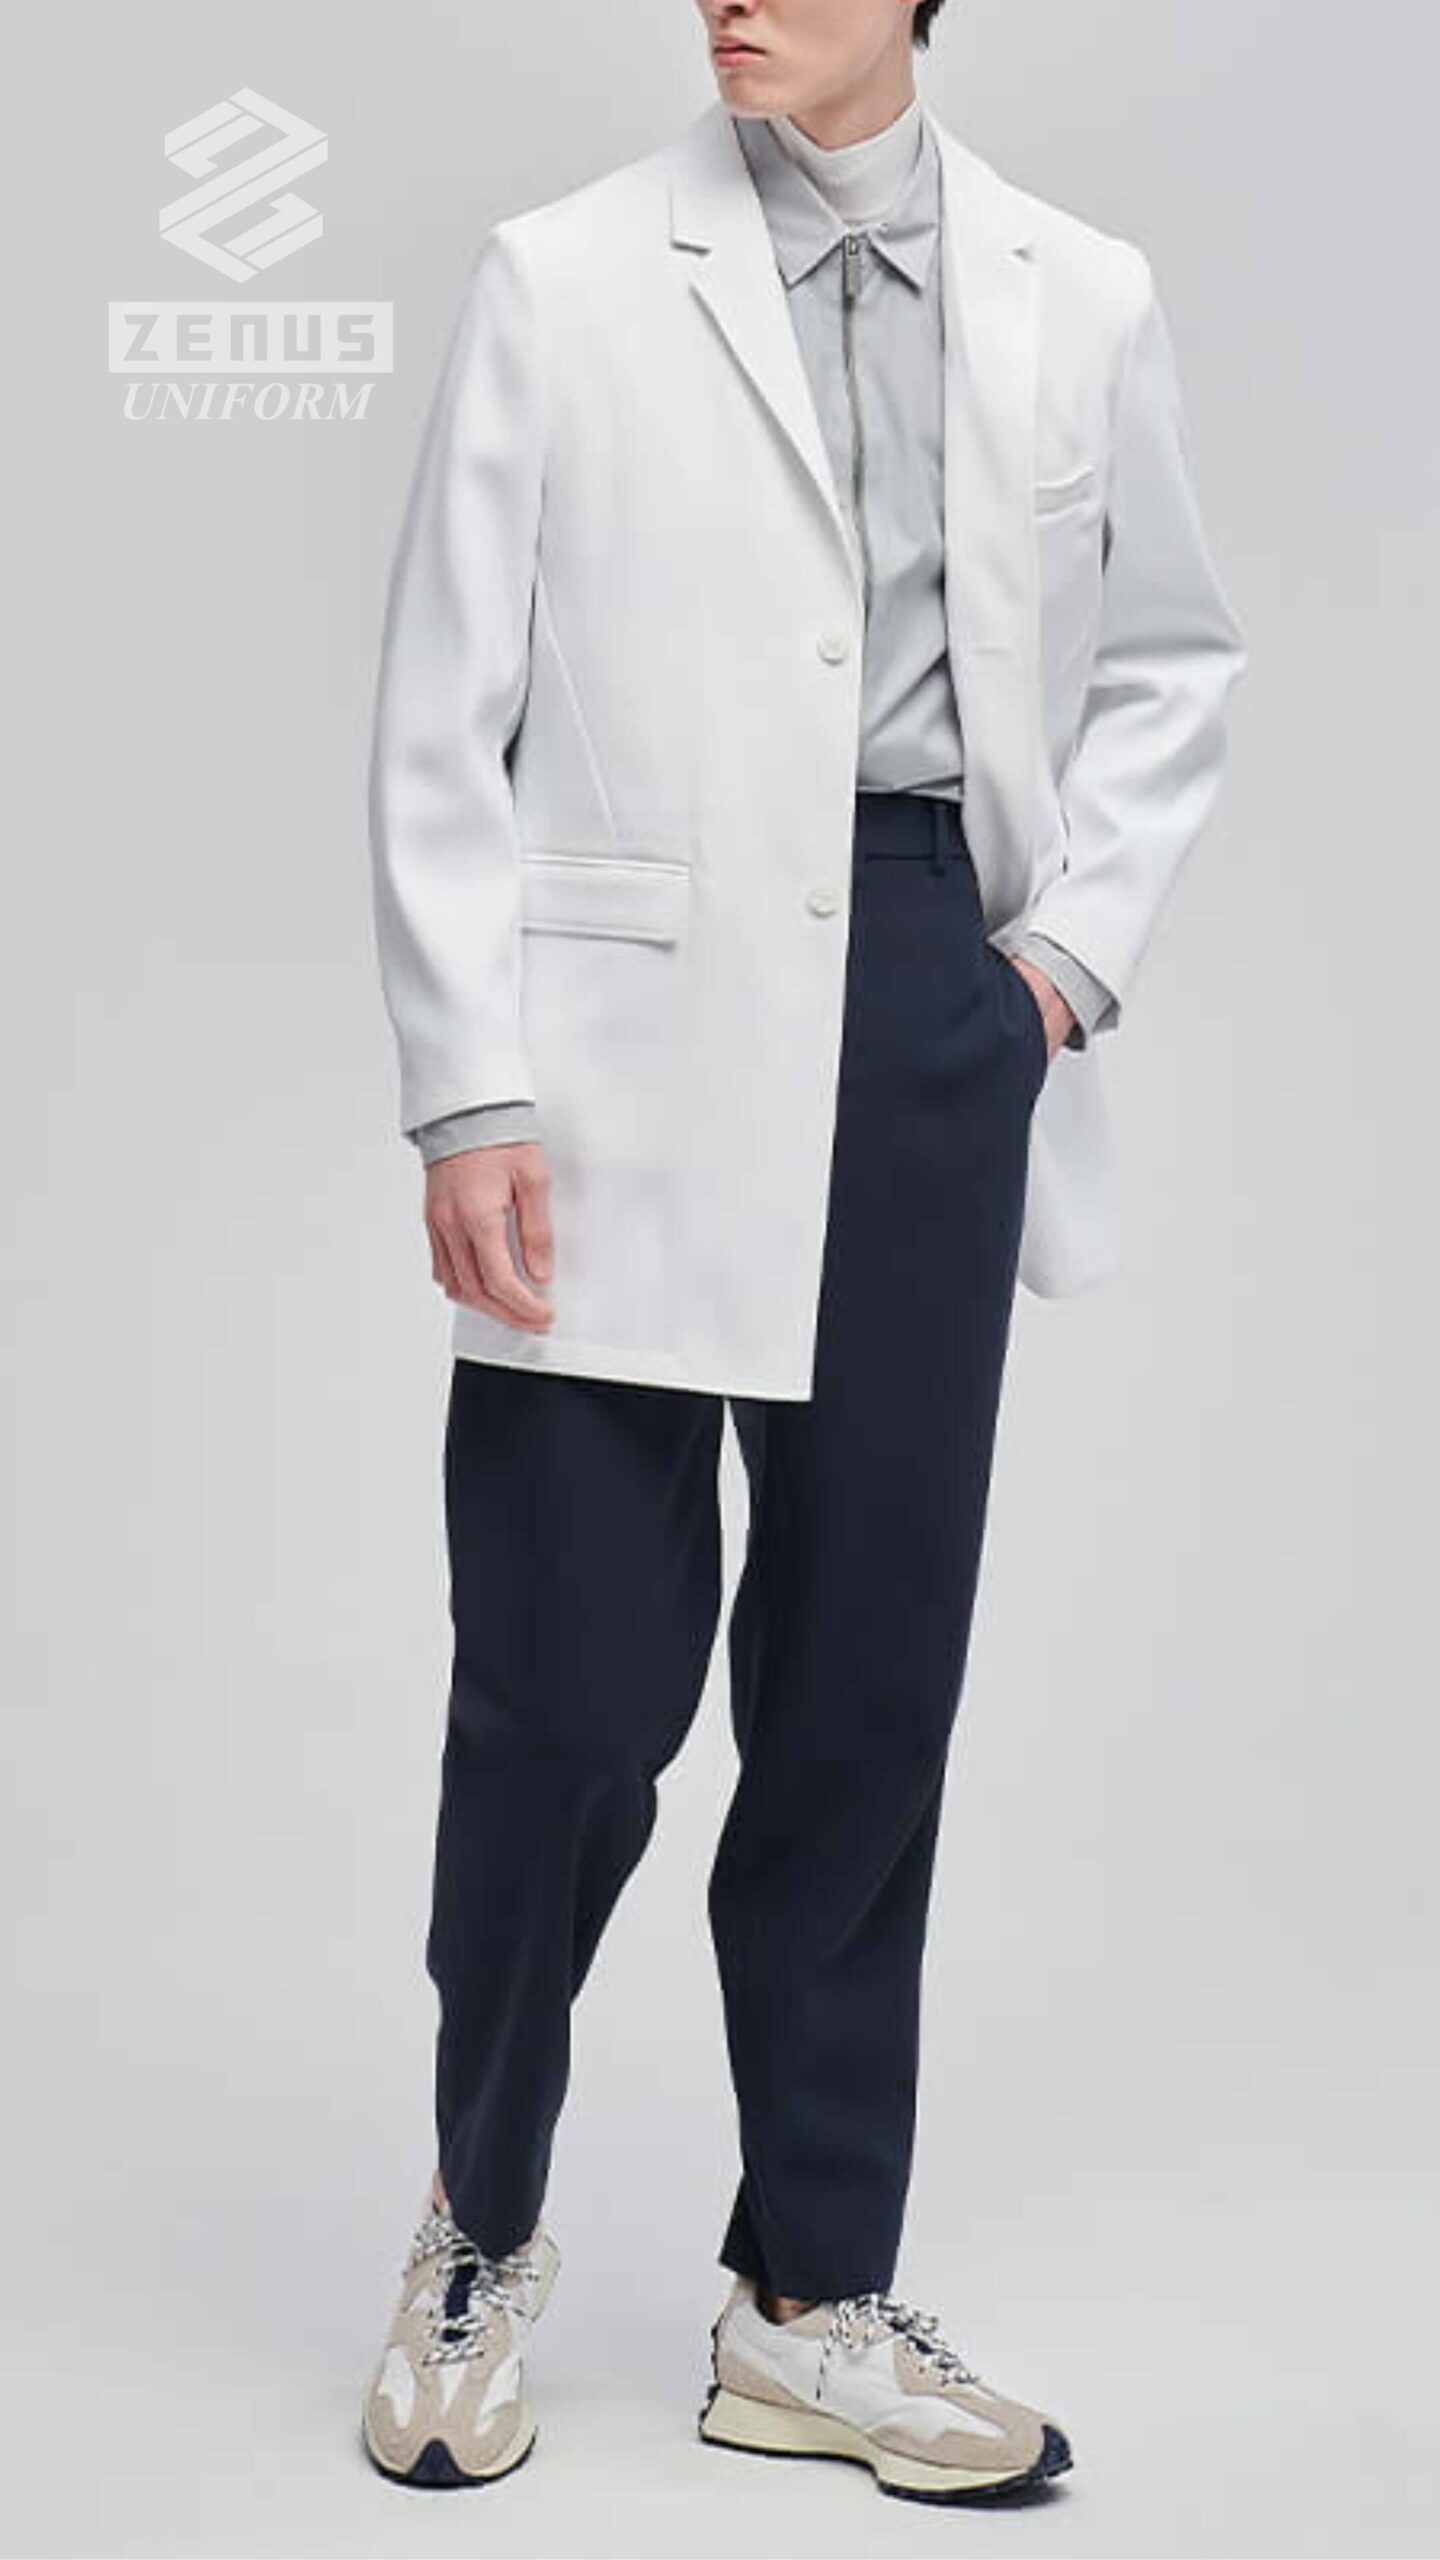 醫生袍, 醫師袍, Zenus Uniform 醫生衫 -pic001